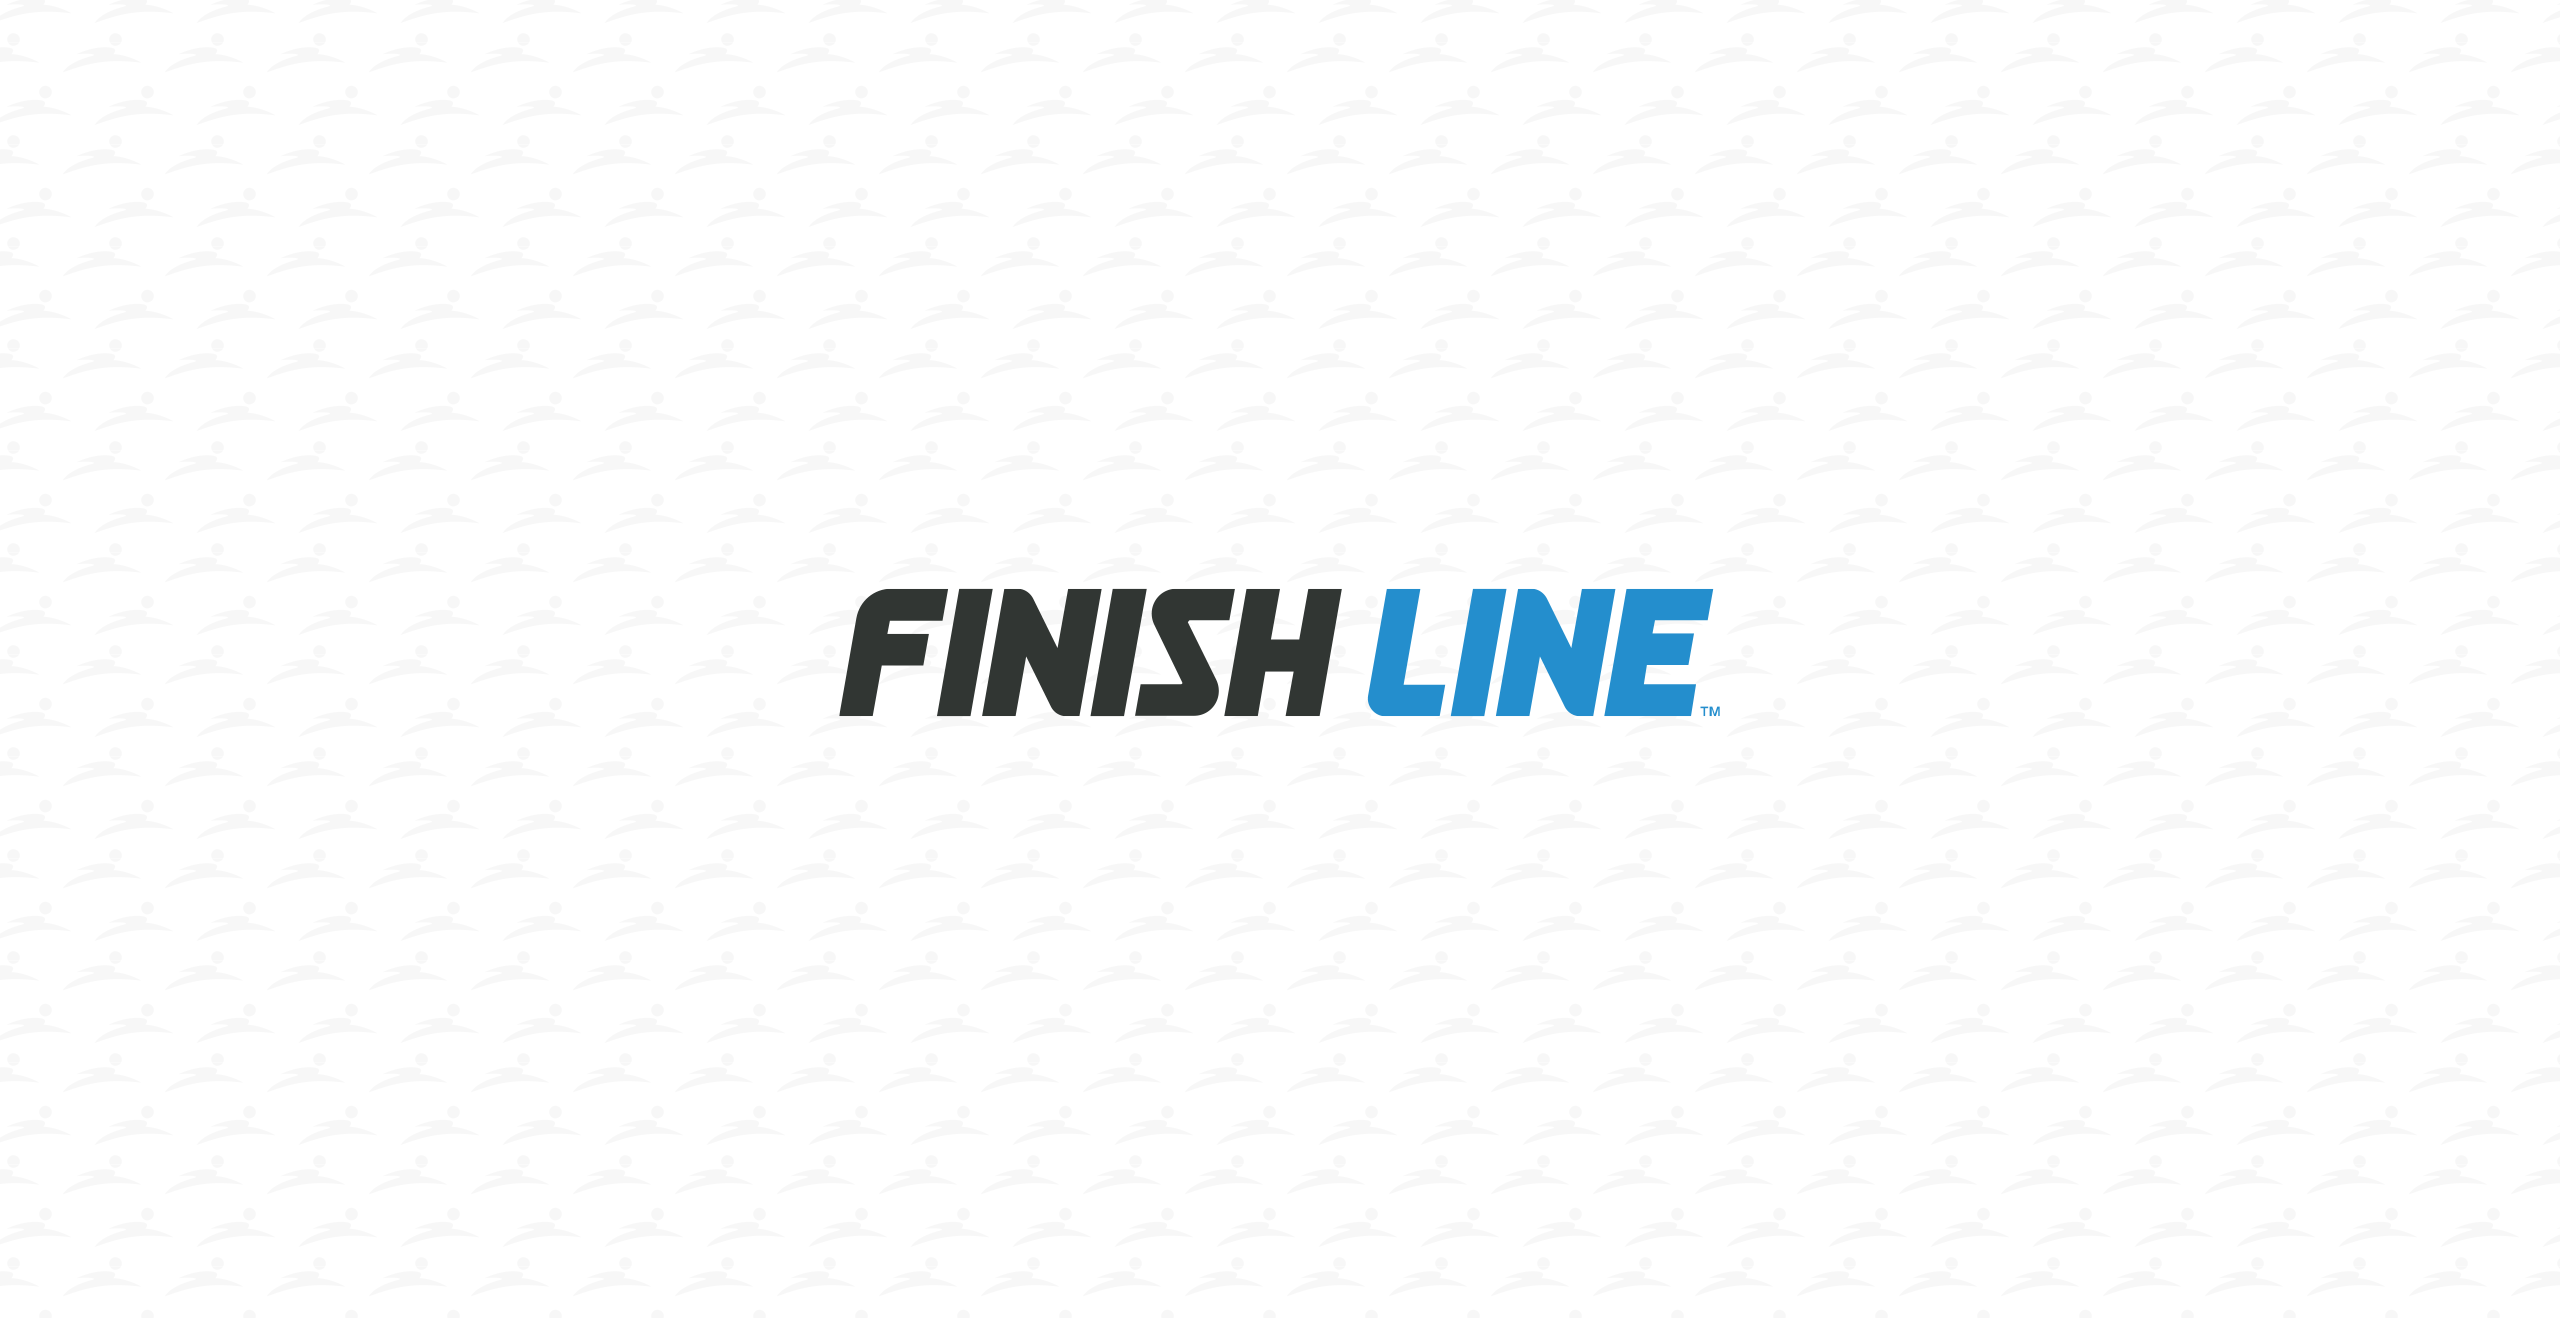 Finish Line - logo on background